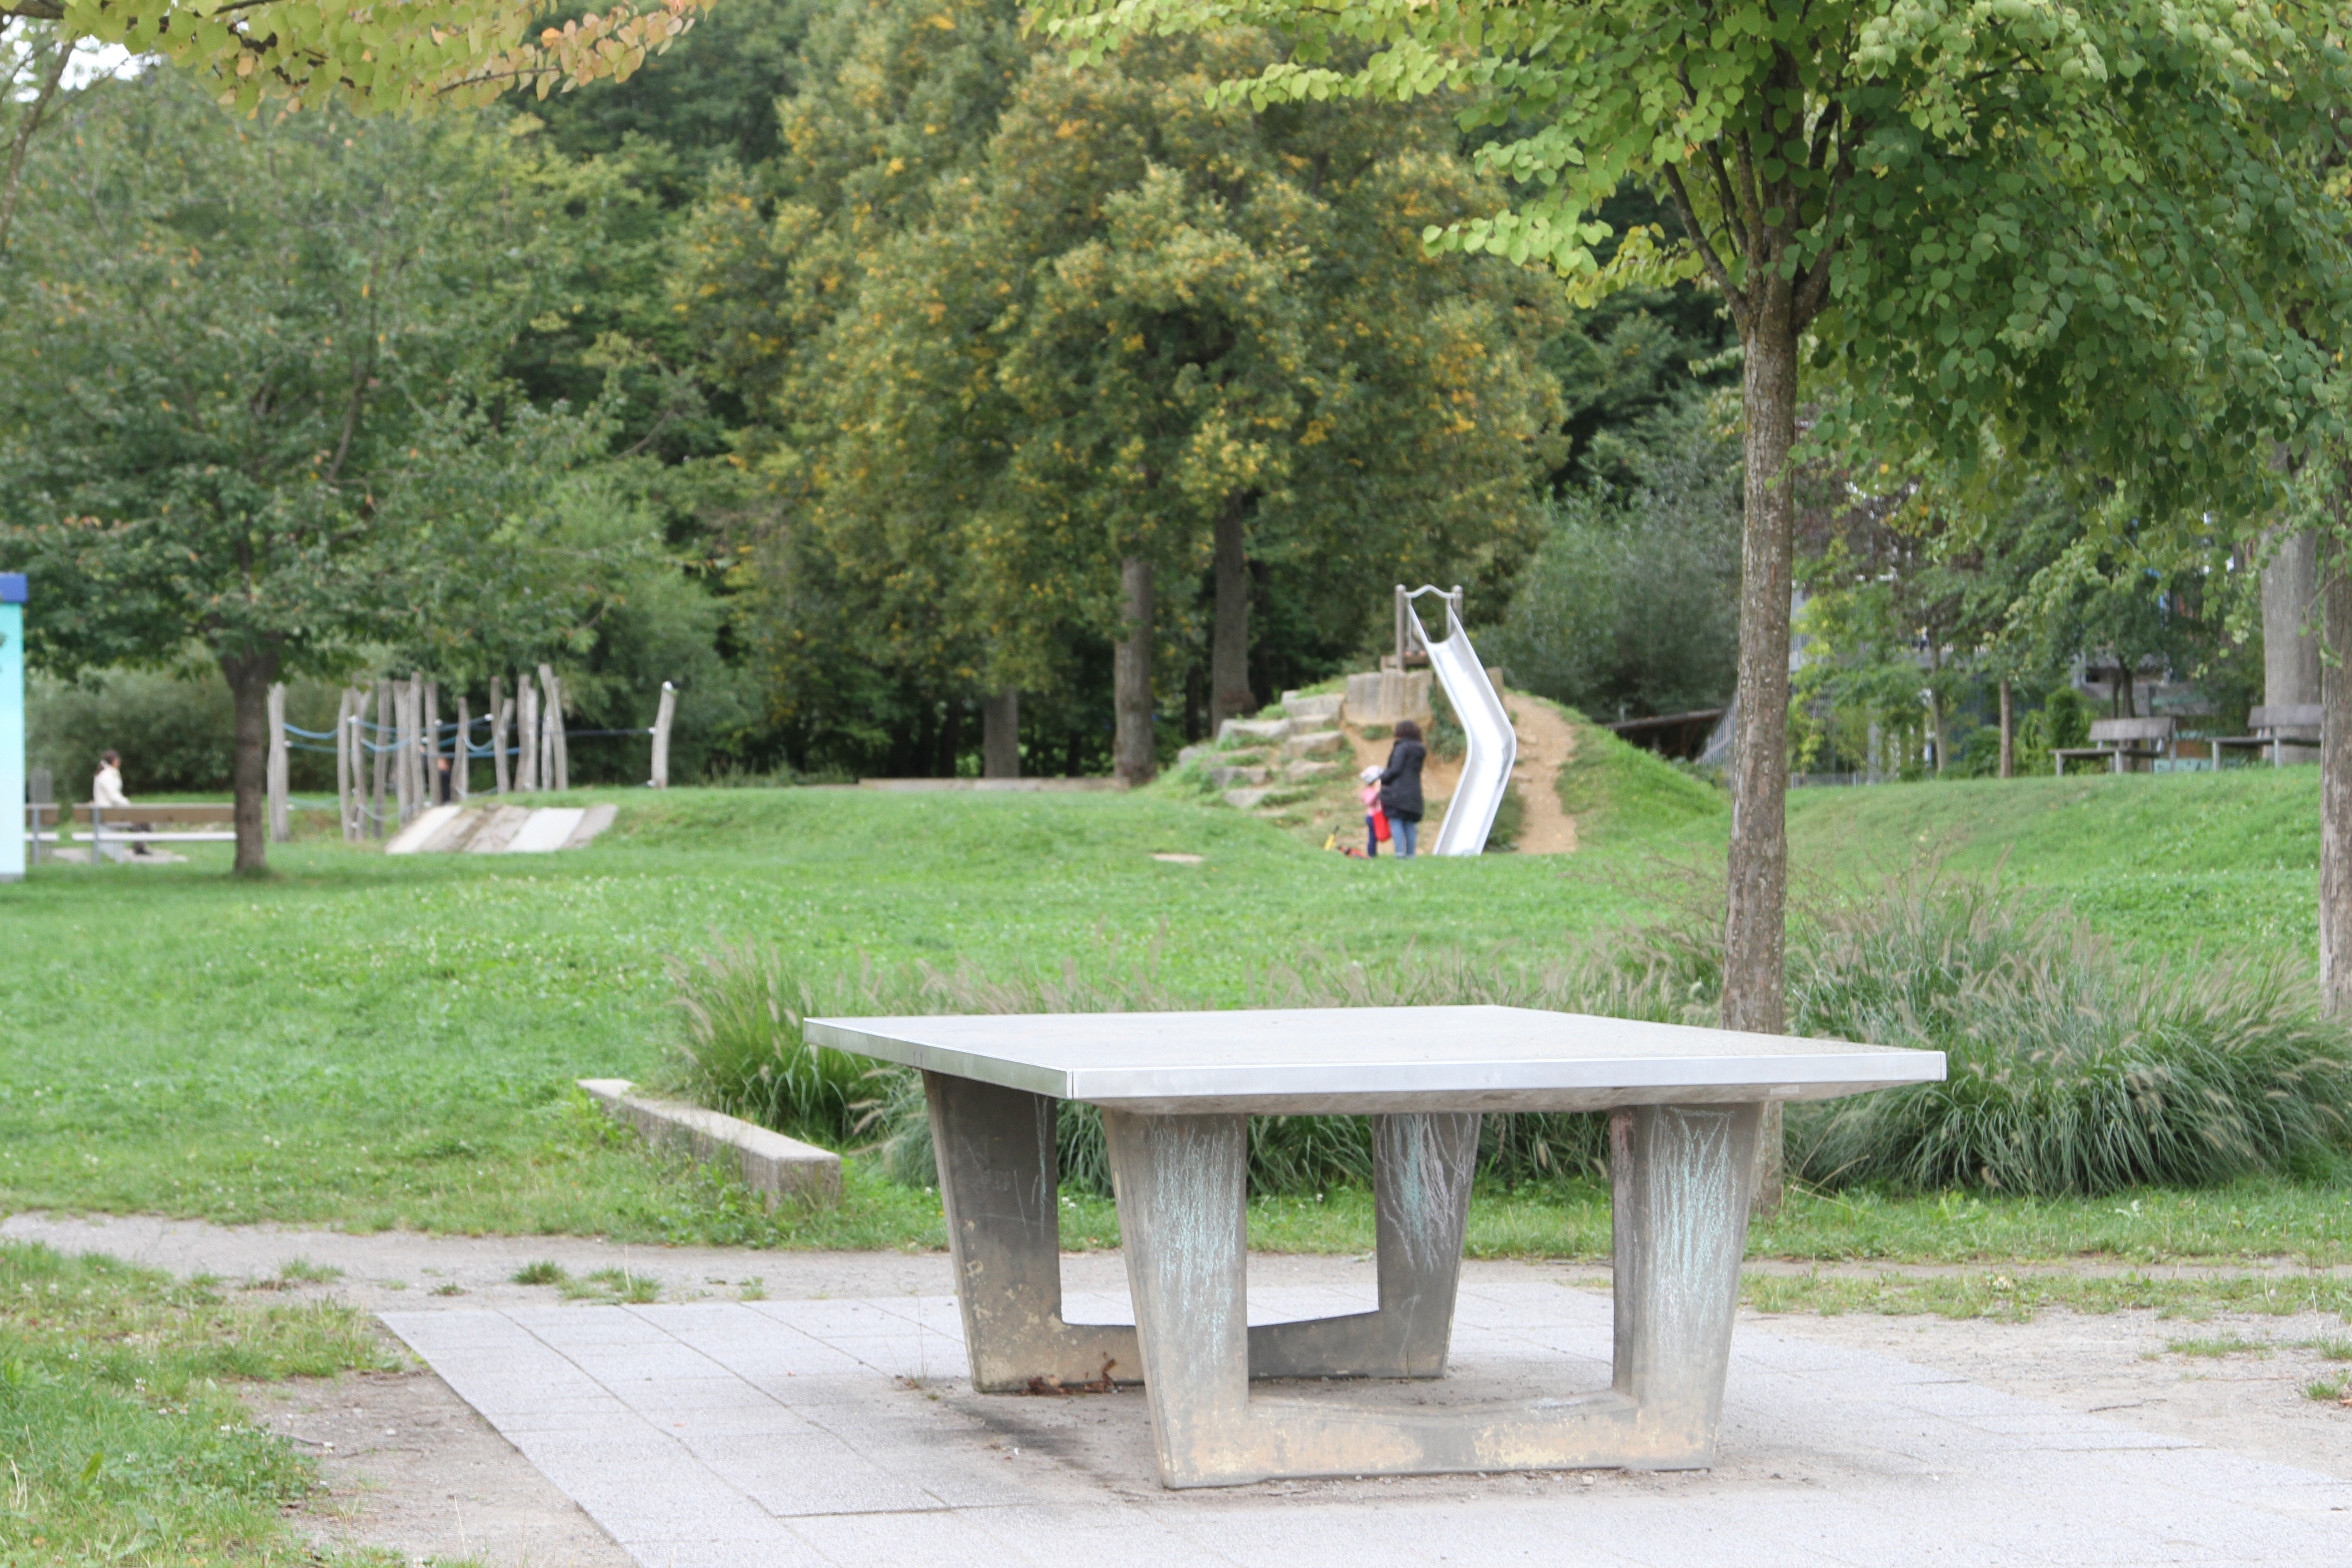 Imagen de una mesa de juegos en medio de un parque, en el que se ven otros juegos para niños más al fondo.